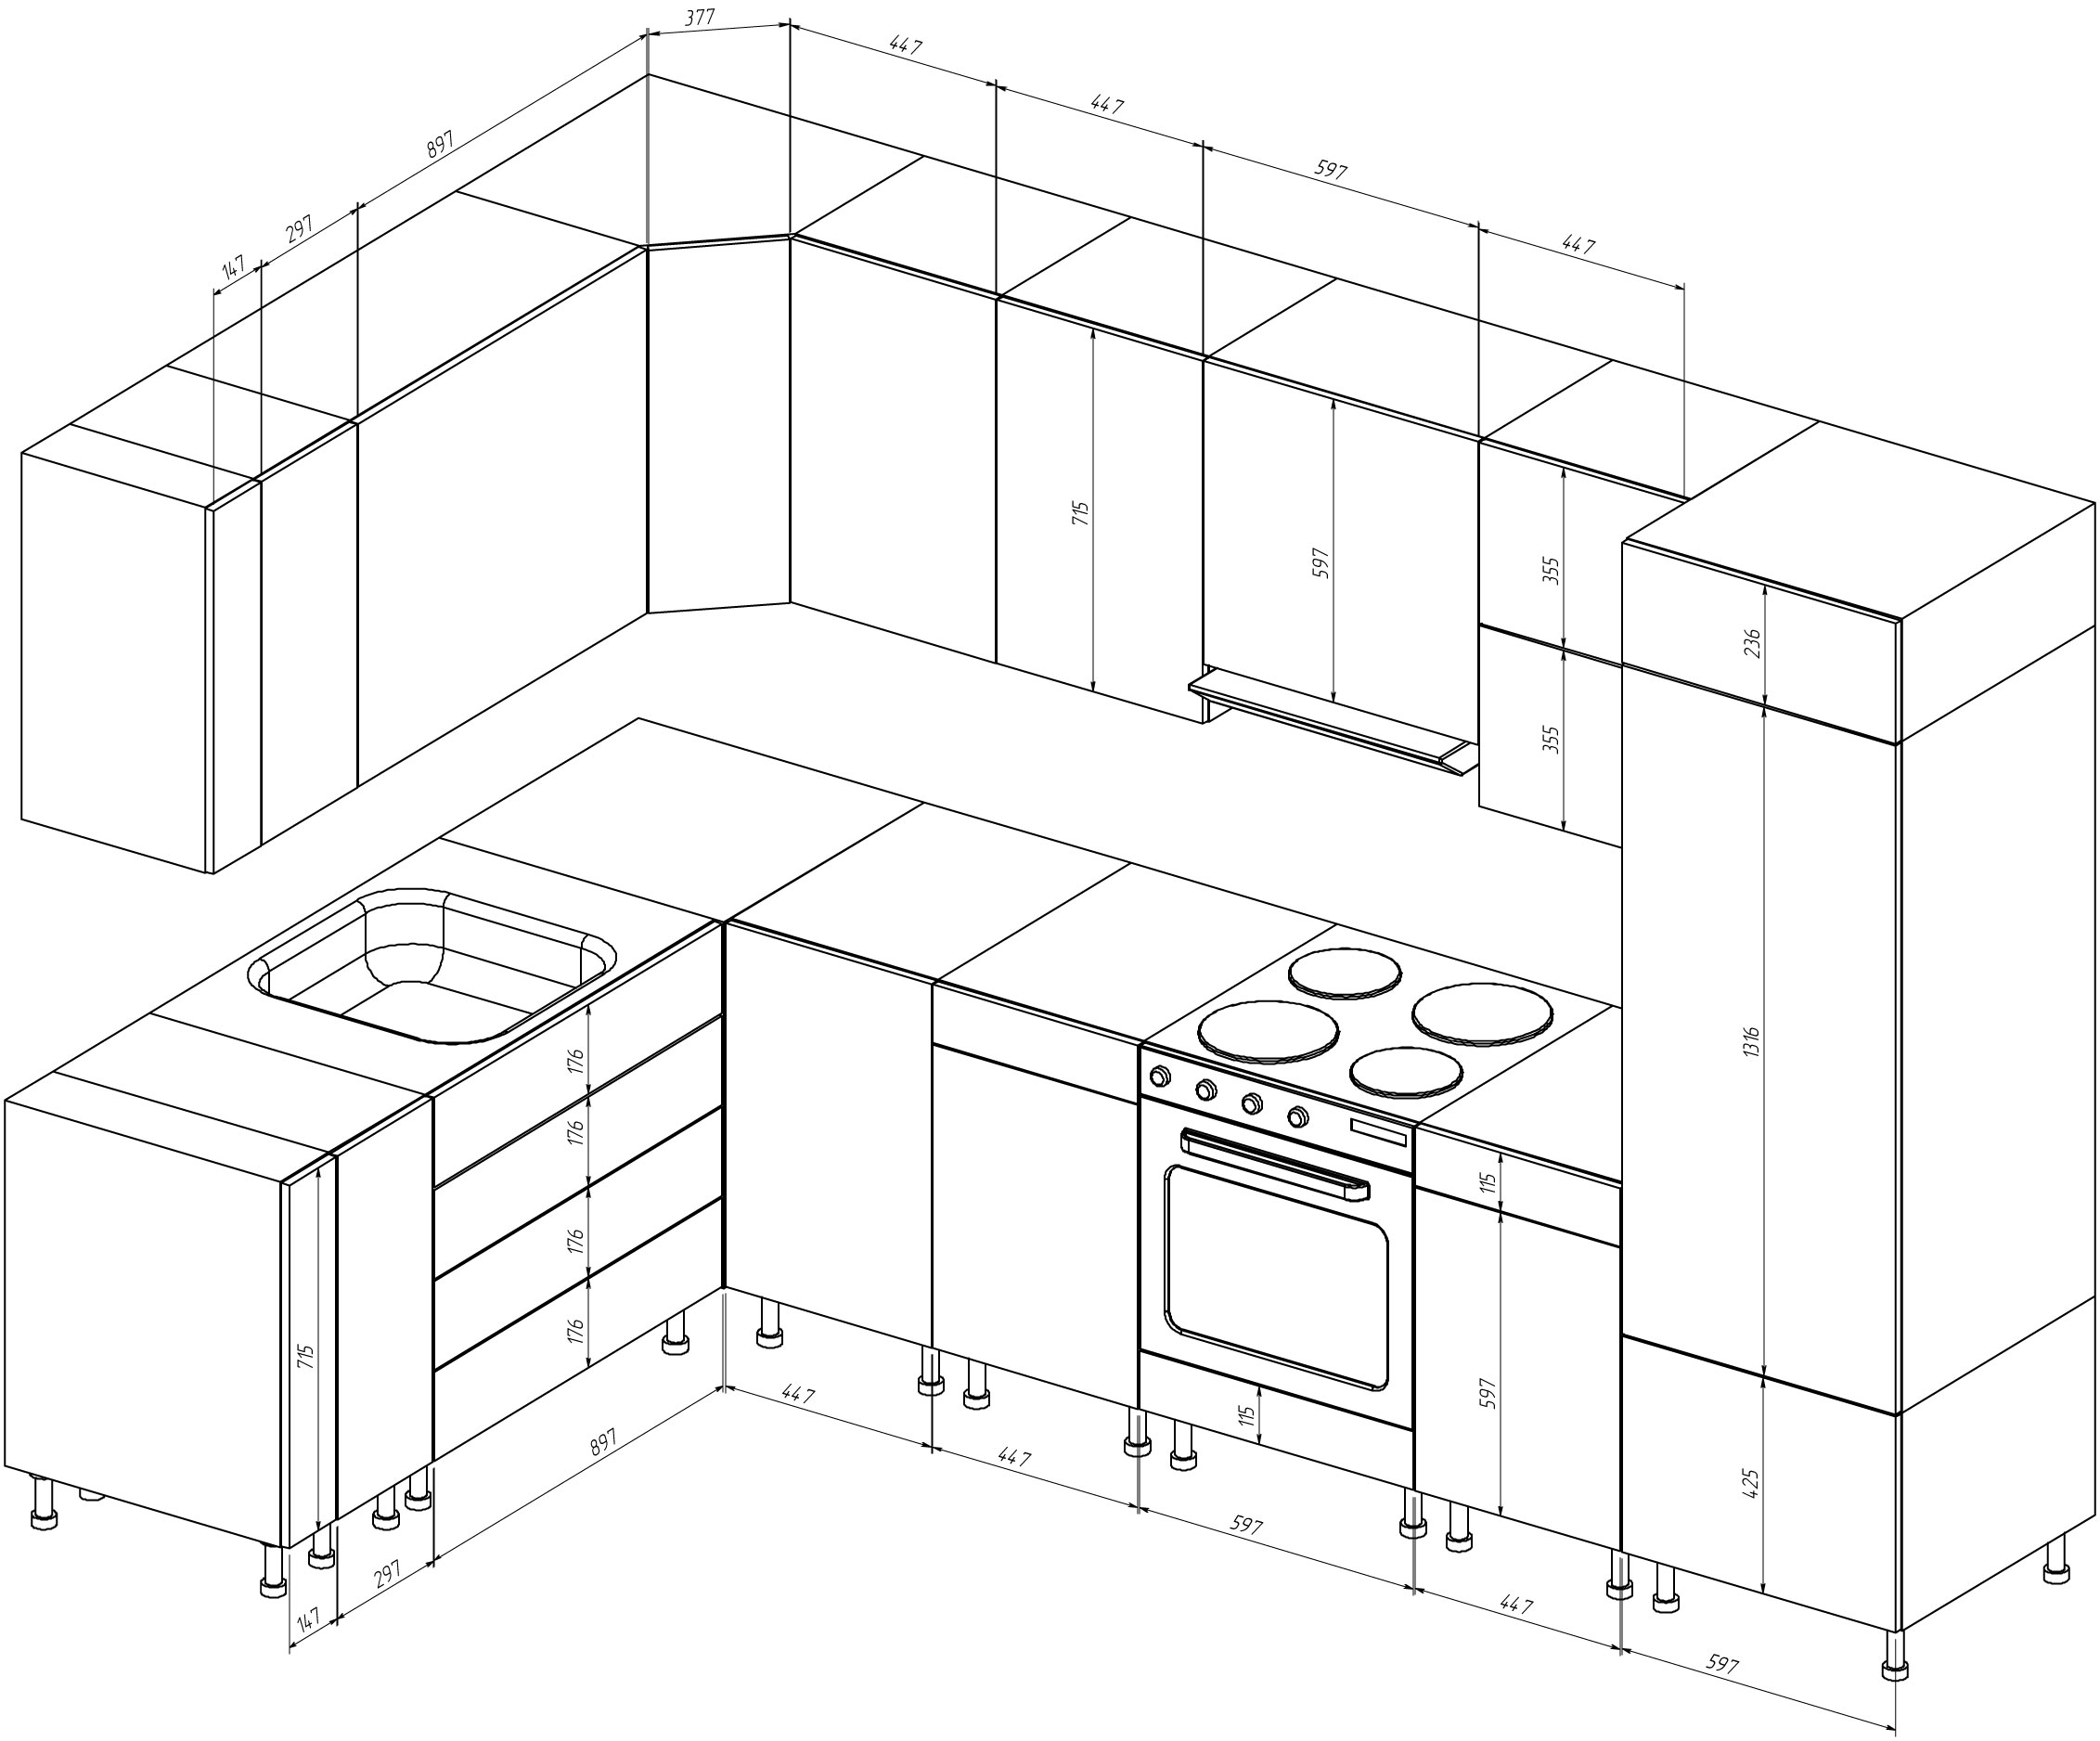 Размеры кухонных шкафов: глубина, ширина, высота модулей - подробное руководство